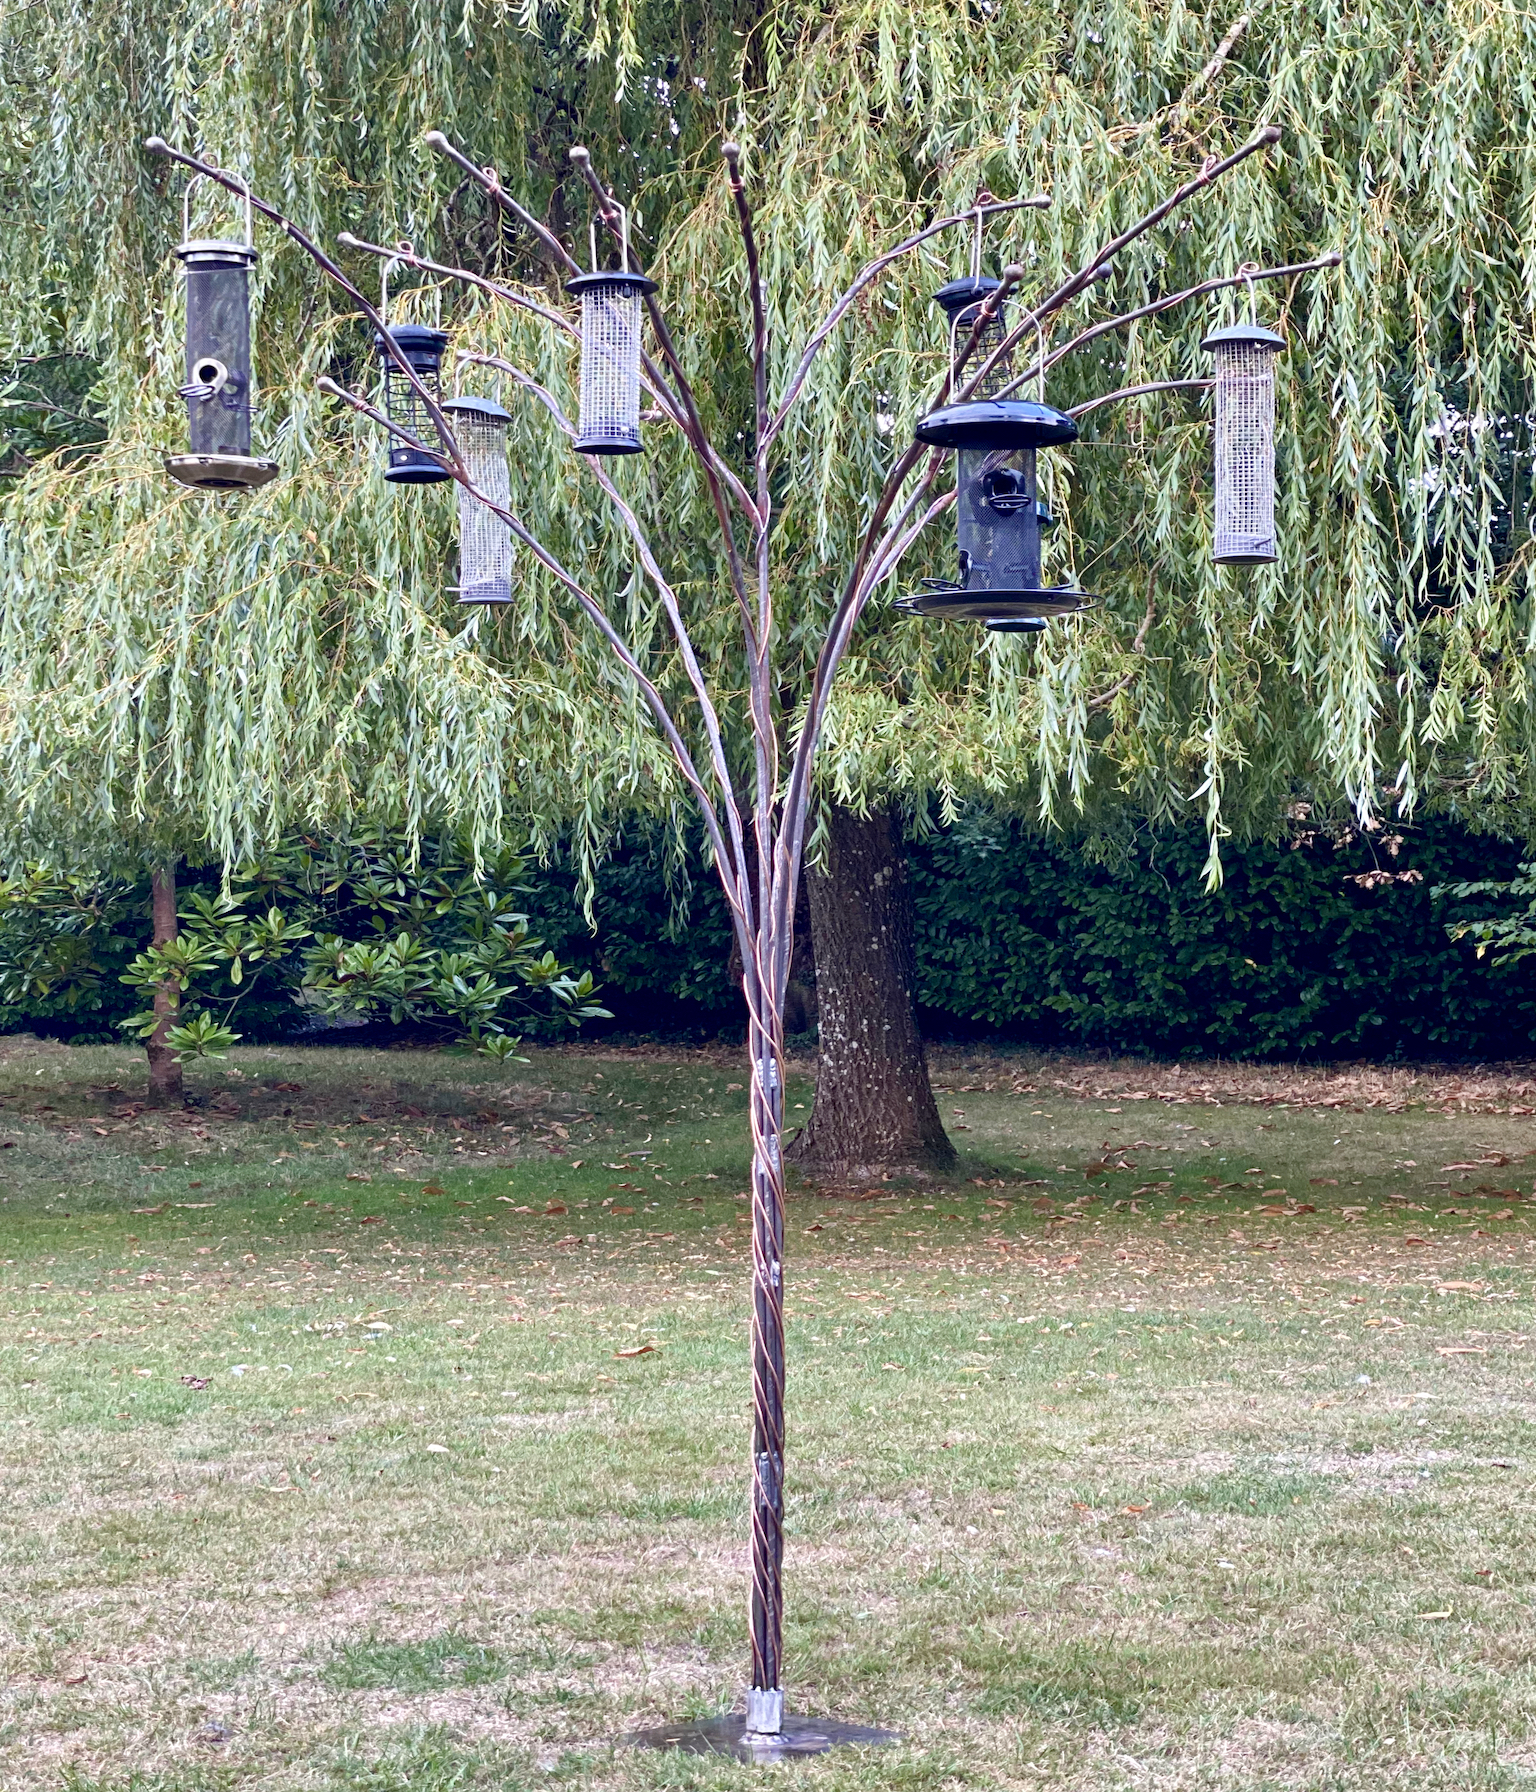 Elizabeth-bird-feeding-tree-with-feeders